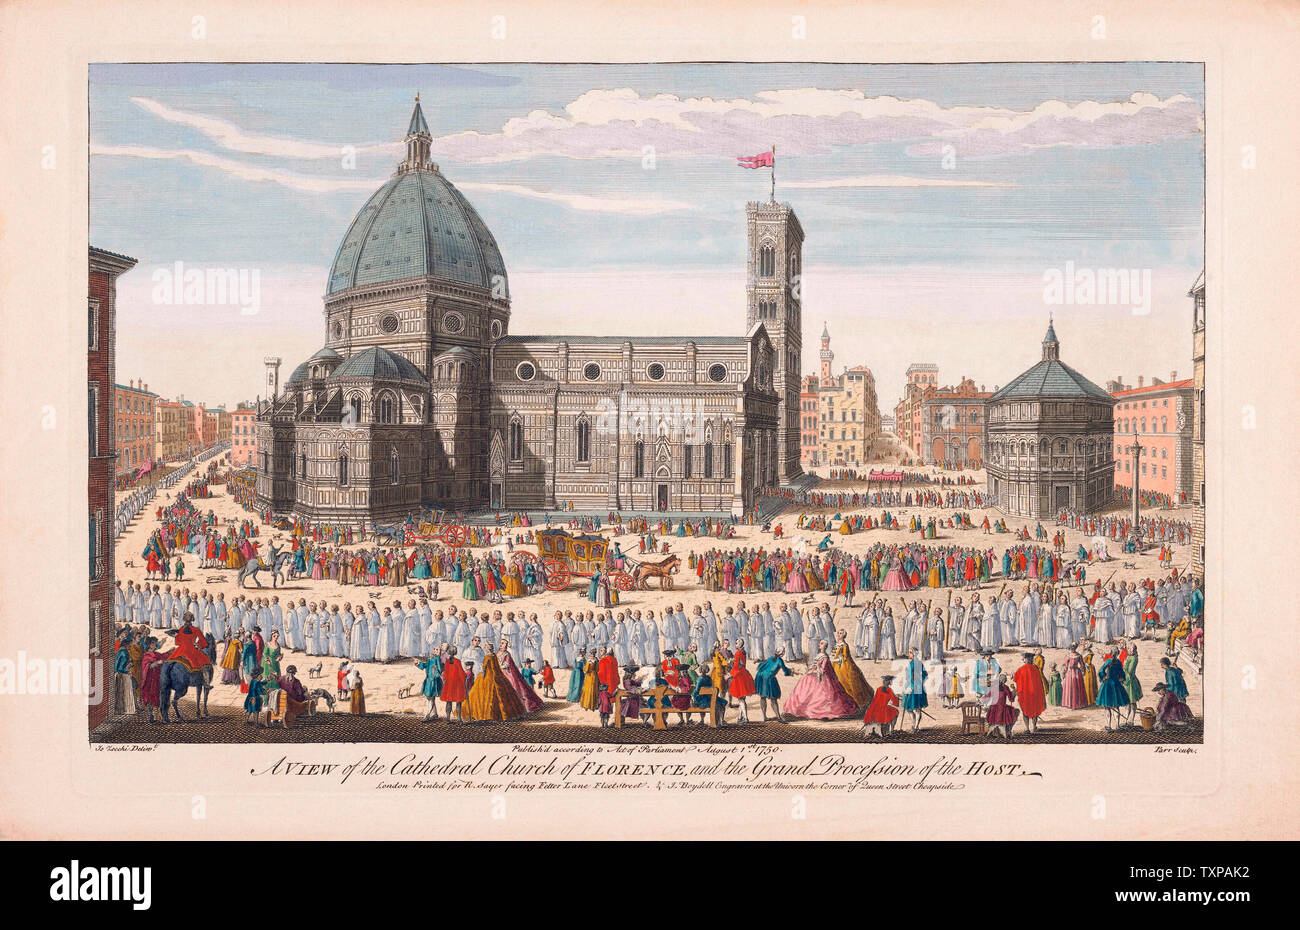 Una vista della chiesa cattedrale di Firenze e il gran processione dell'host. Dopo un colorate a mano incisione pubblicato a Londra, 1750. Foto Stock